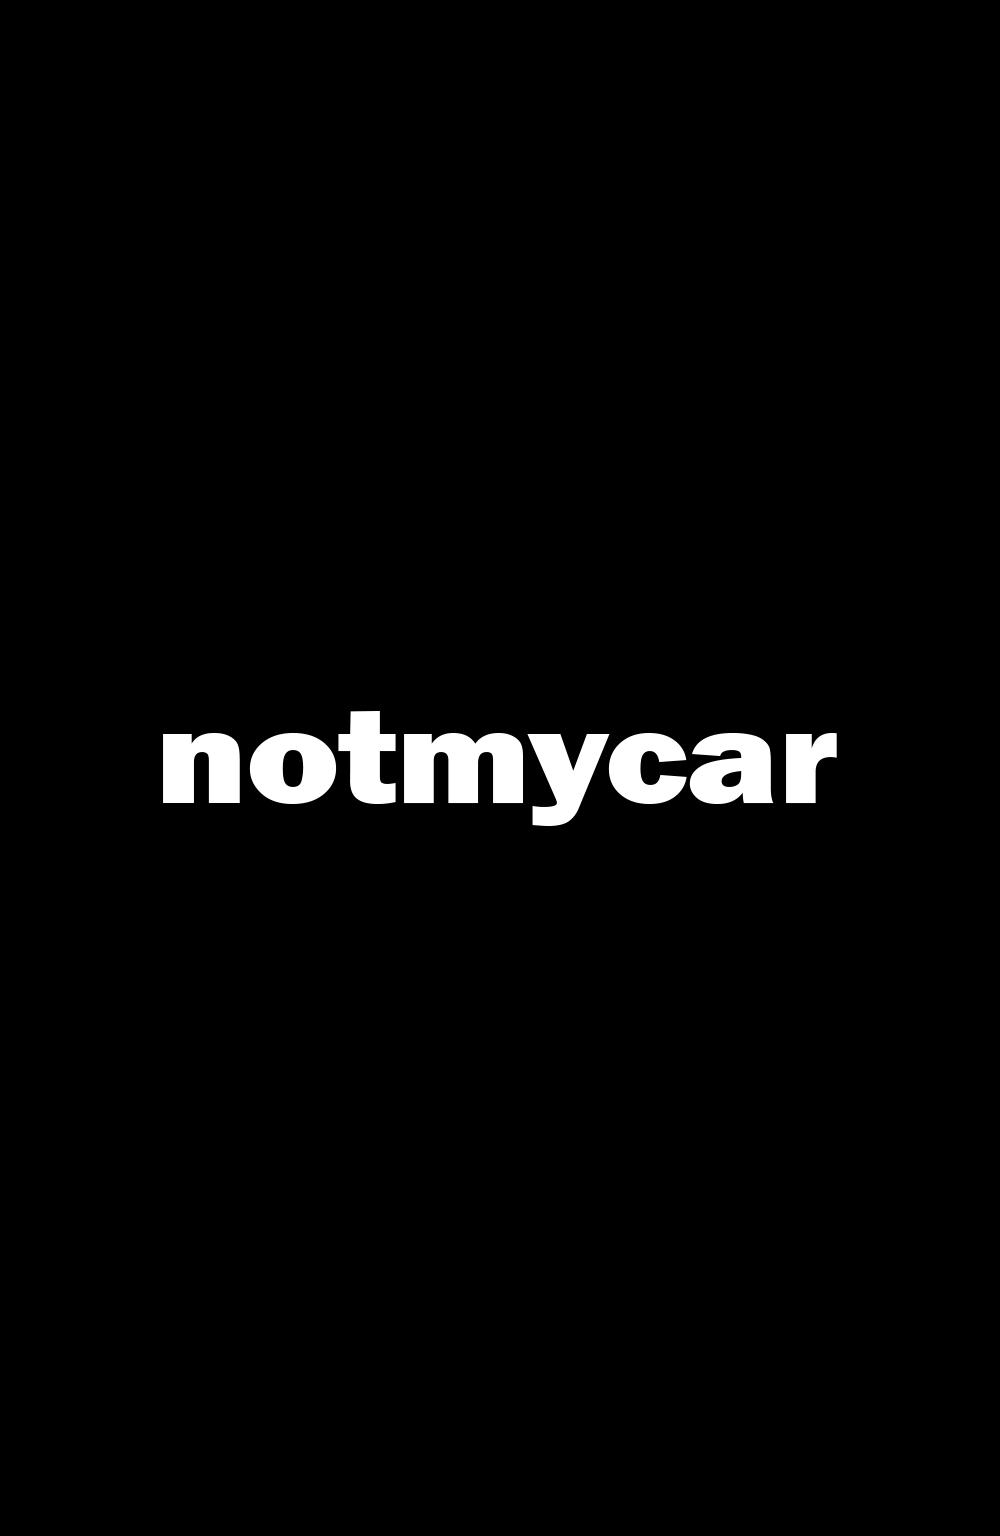 notmycar